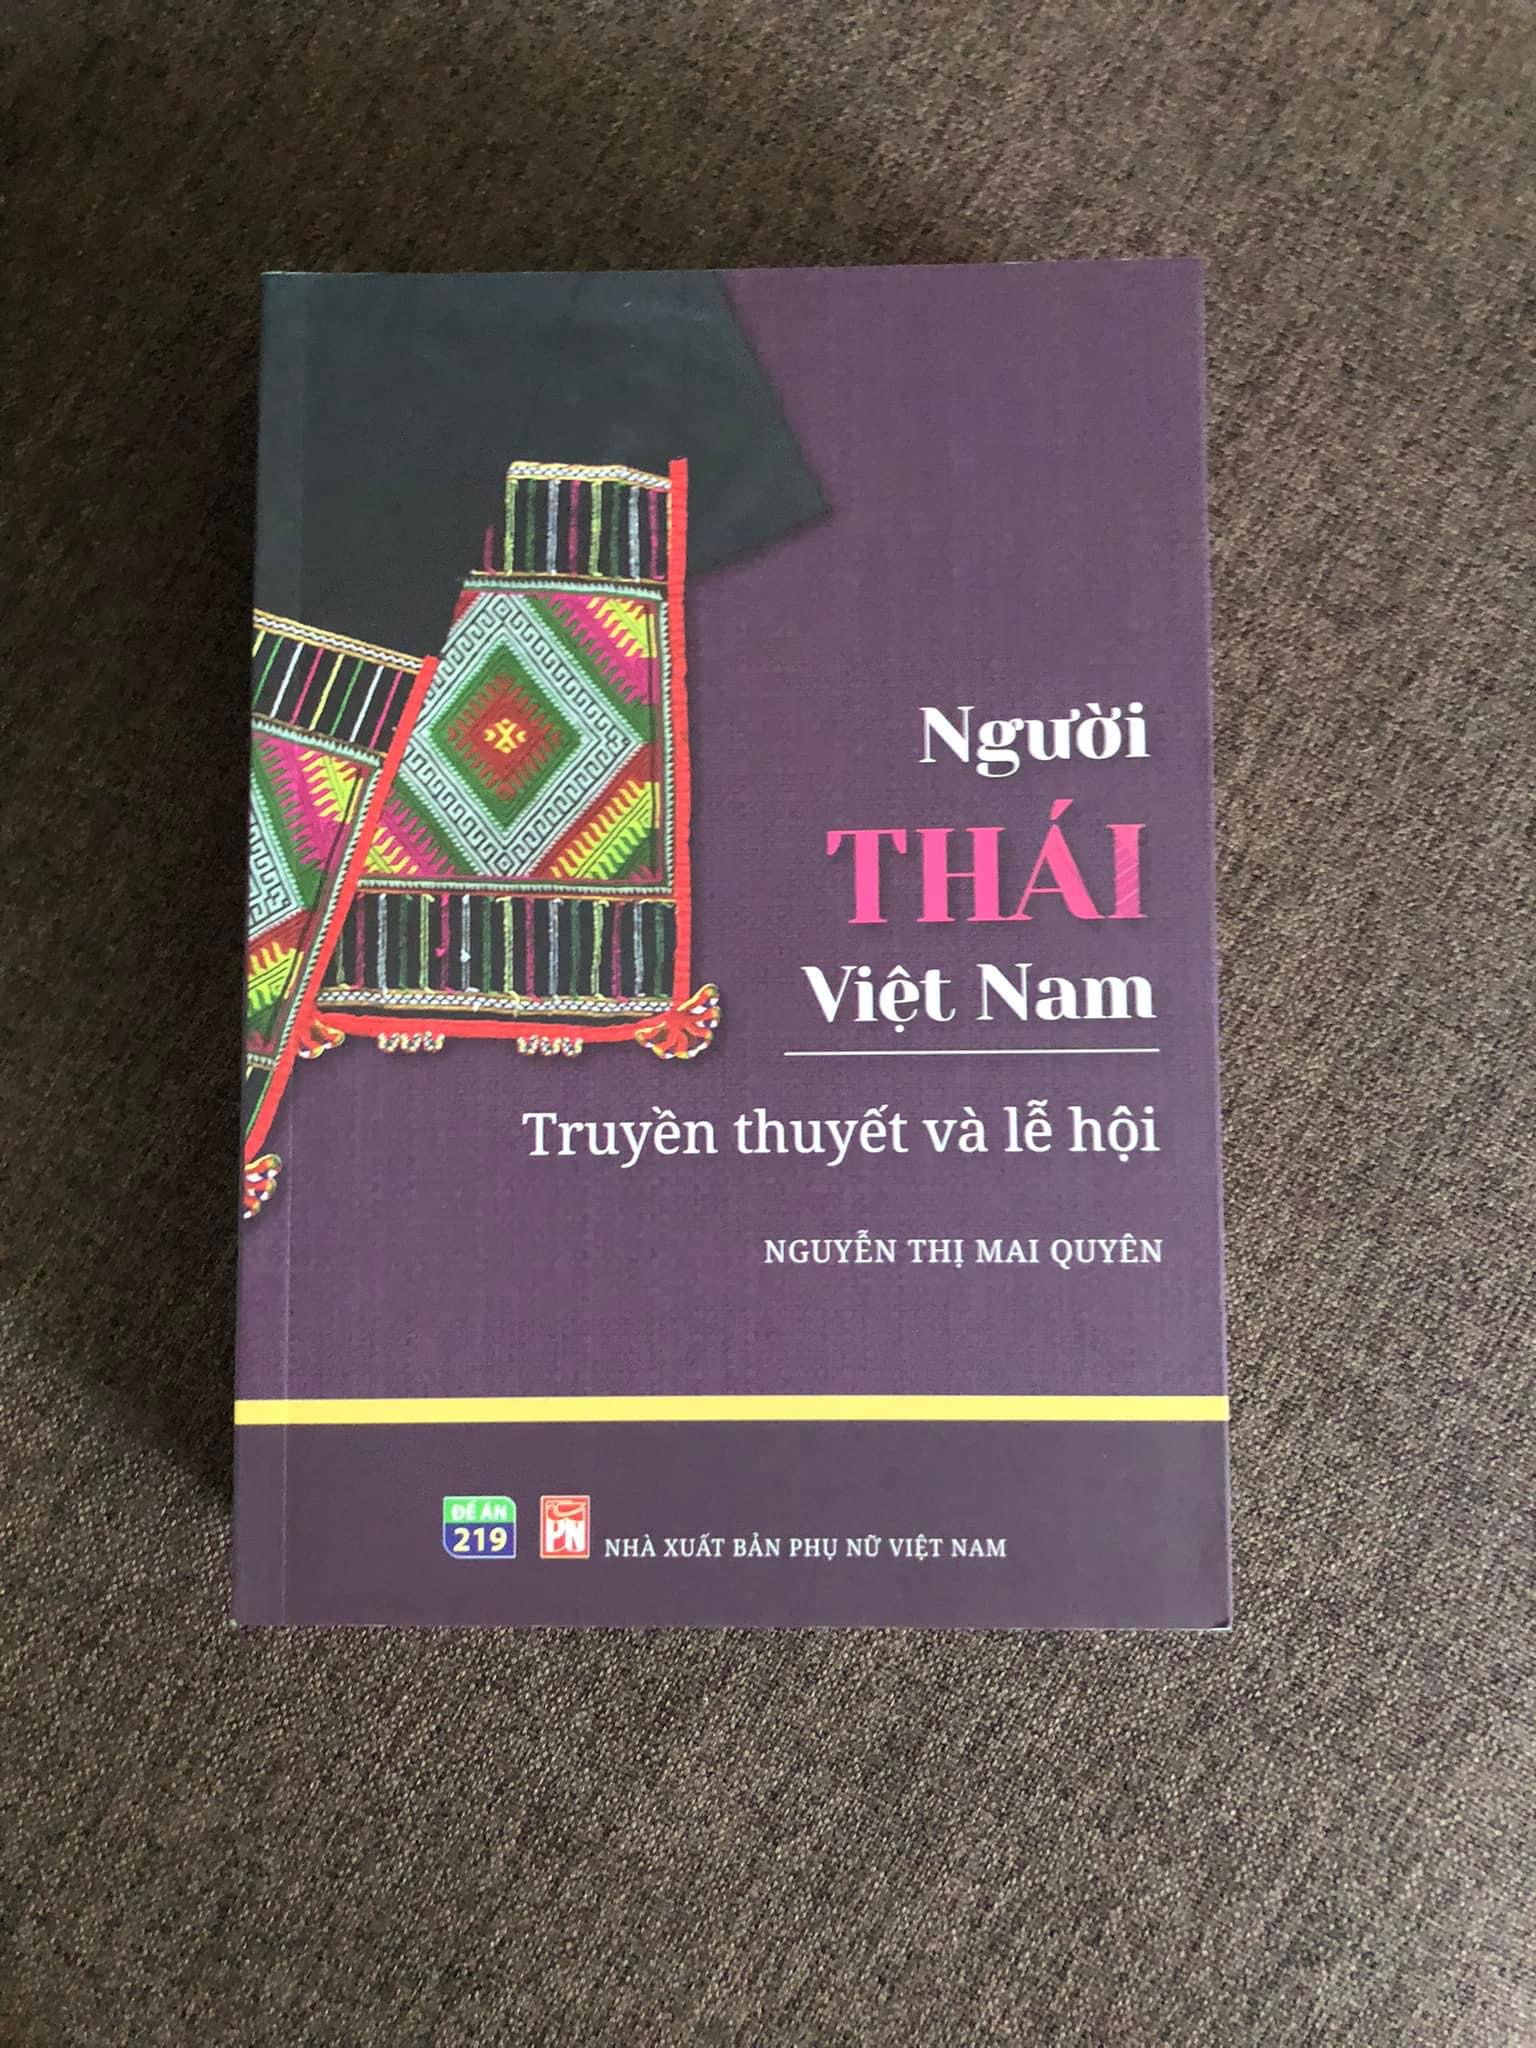 TỦ SÁCH DÂN TỘC - Bộ 3 cuốn: Người Thái ở Việt Nam: Truyền thuyết và Lễ hội + Phụ nữ Êđê trong xã hội mẫu hệ + Những câu chuyện về phụ nữ Chăm trong xã hội mẫu hệ